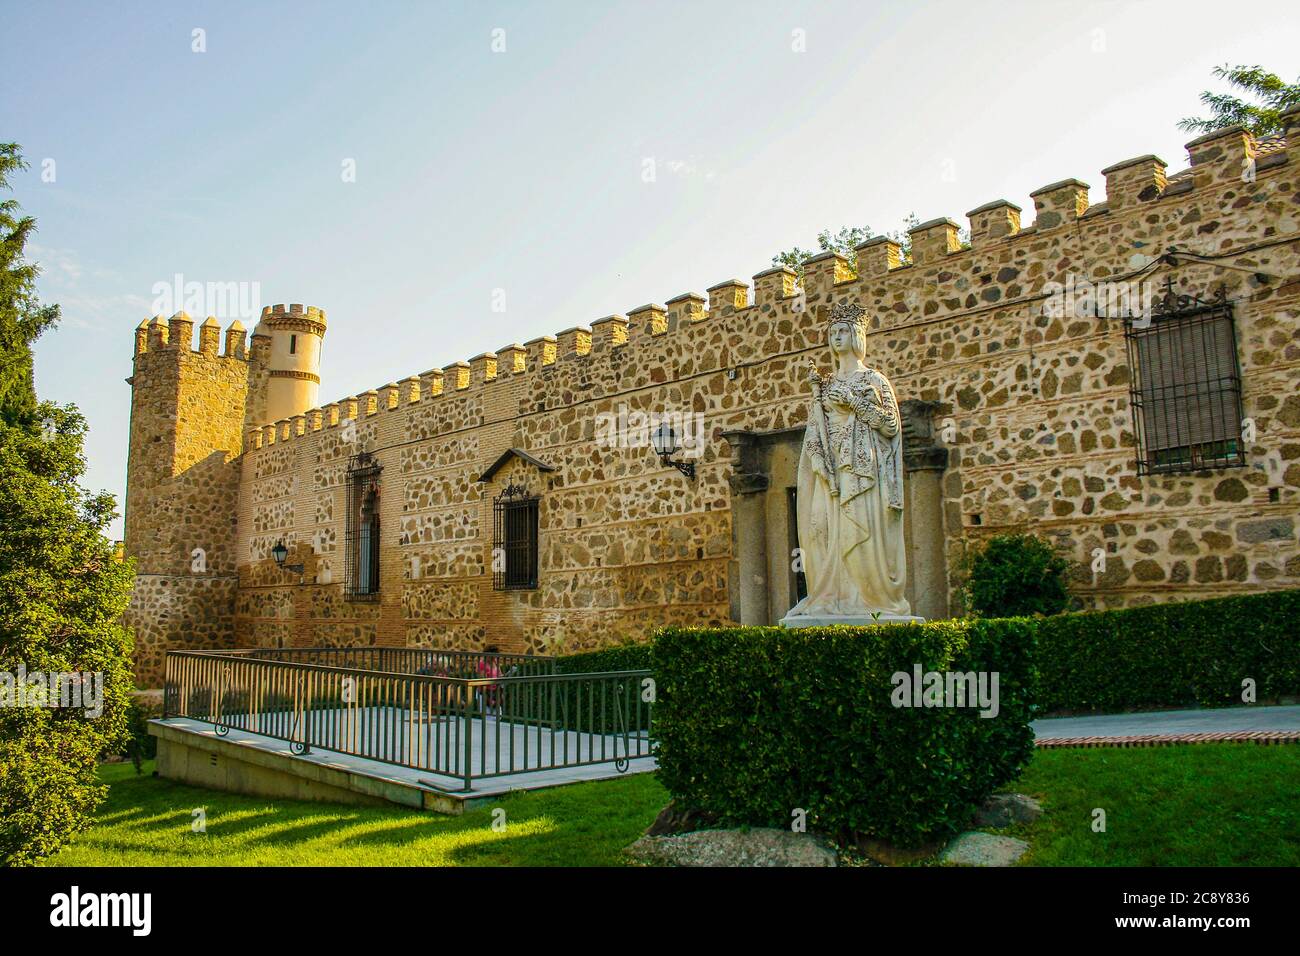 Toledo, Castilla-La Mancha, Spain, Europe. Old town. The Palacio de los Duques de Maqueda, also known as Palacio de La Cava, Statue of Isabella of Castile. Stock Photo